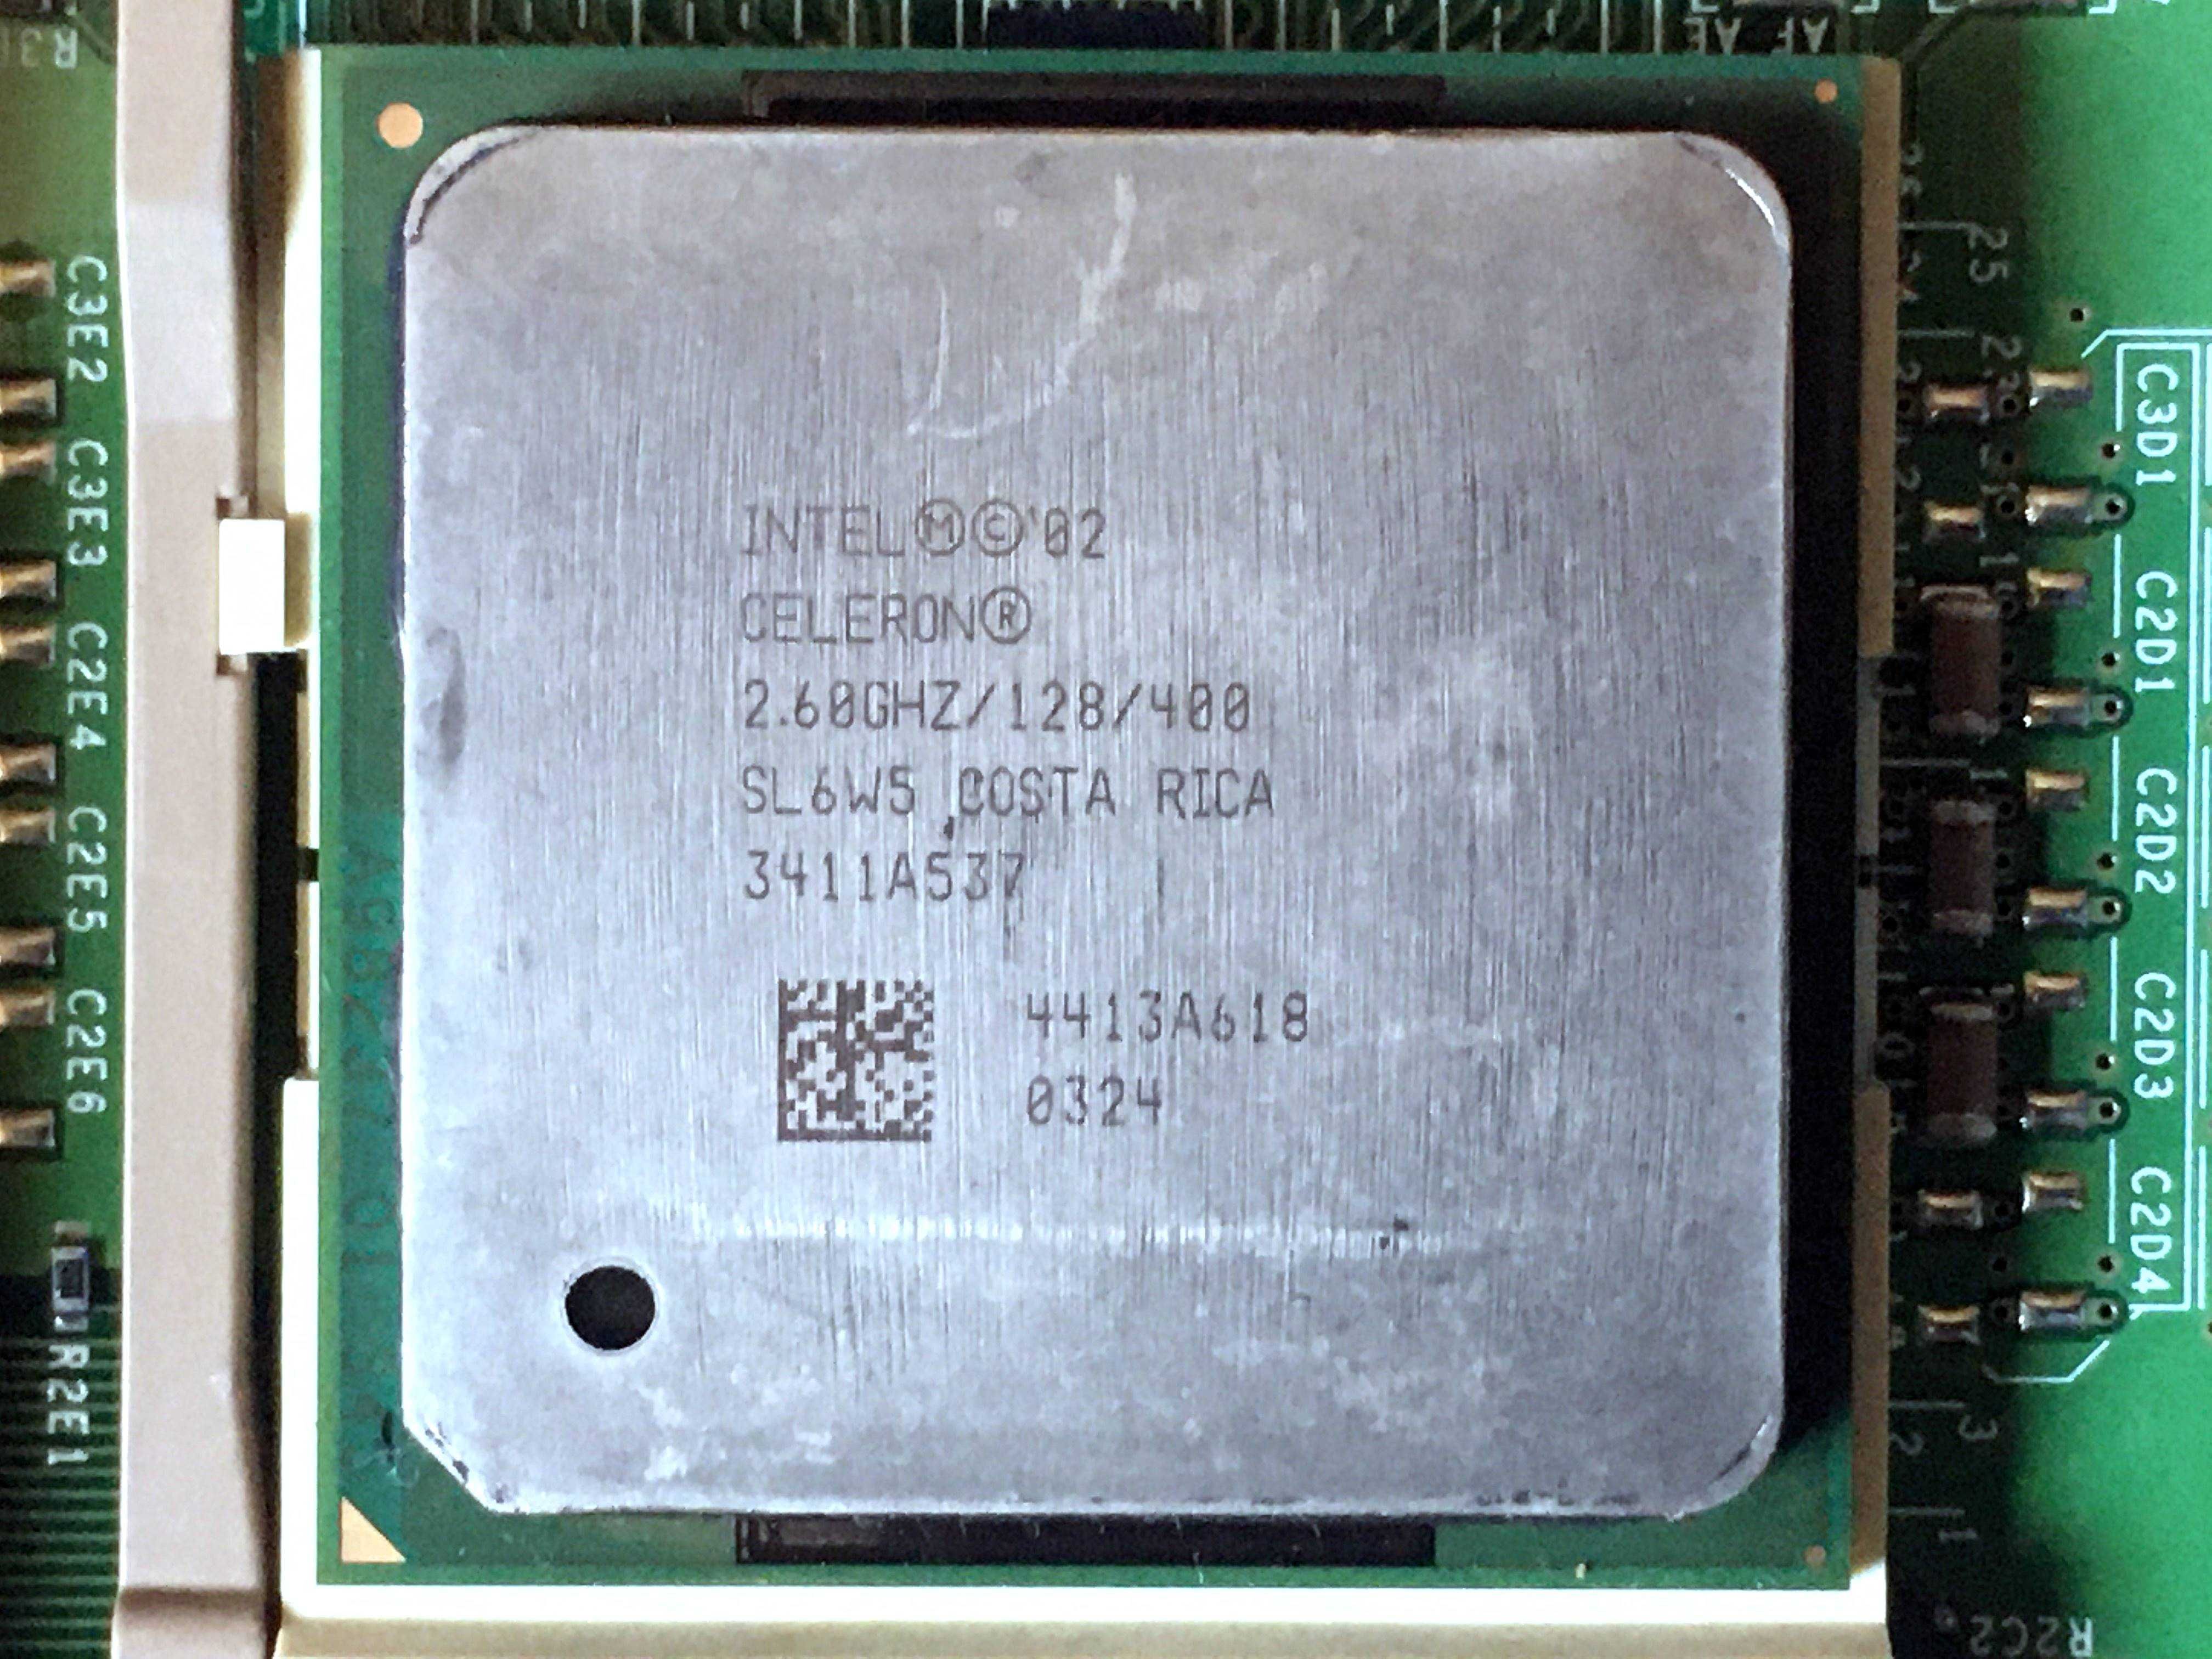 Motherboard Intel D845WN (skt478 - P4 - SDR/DDR), Celeron 2.6Ghz